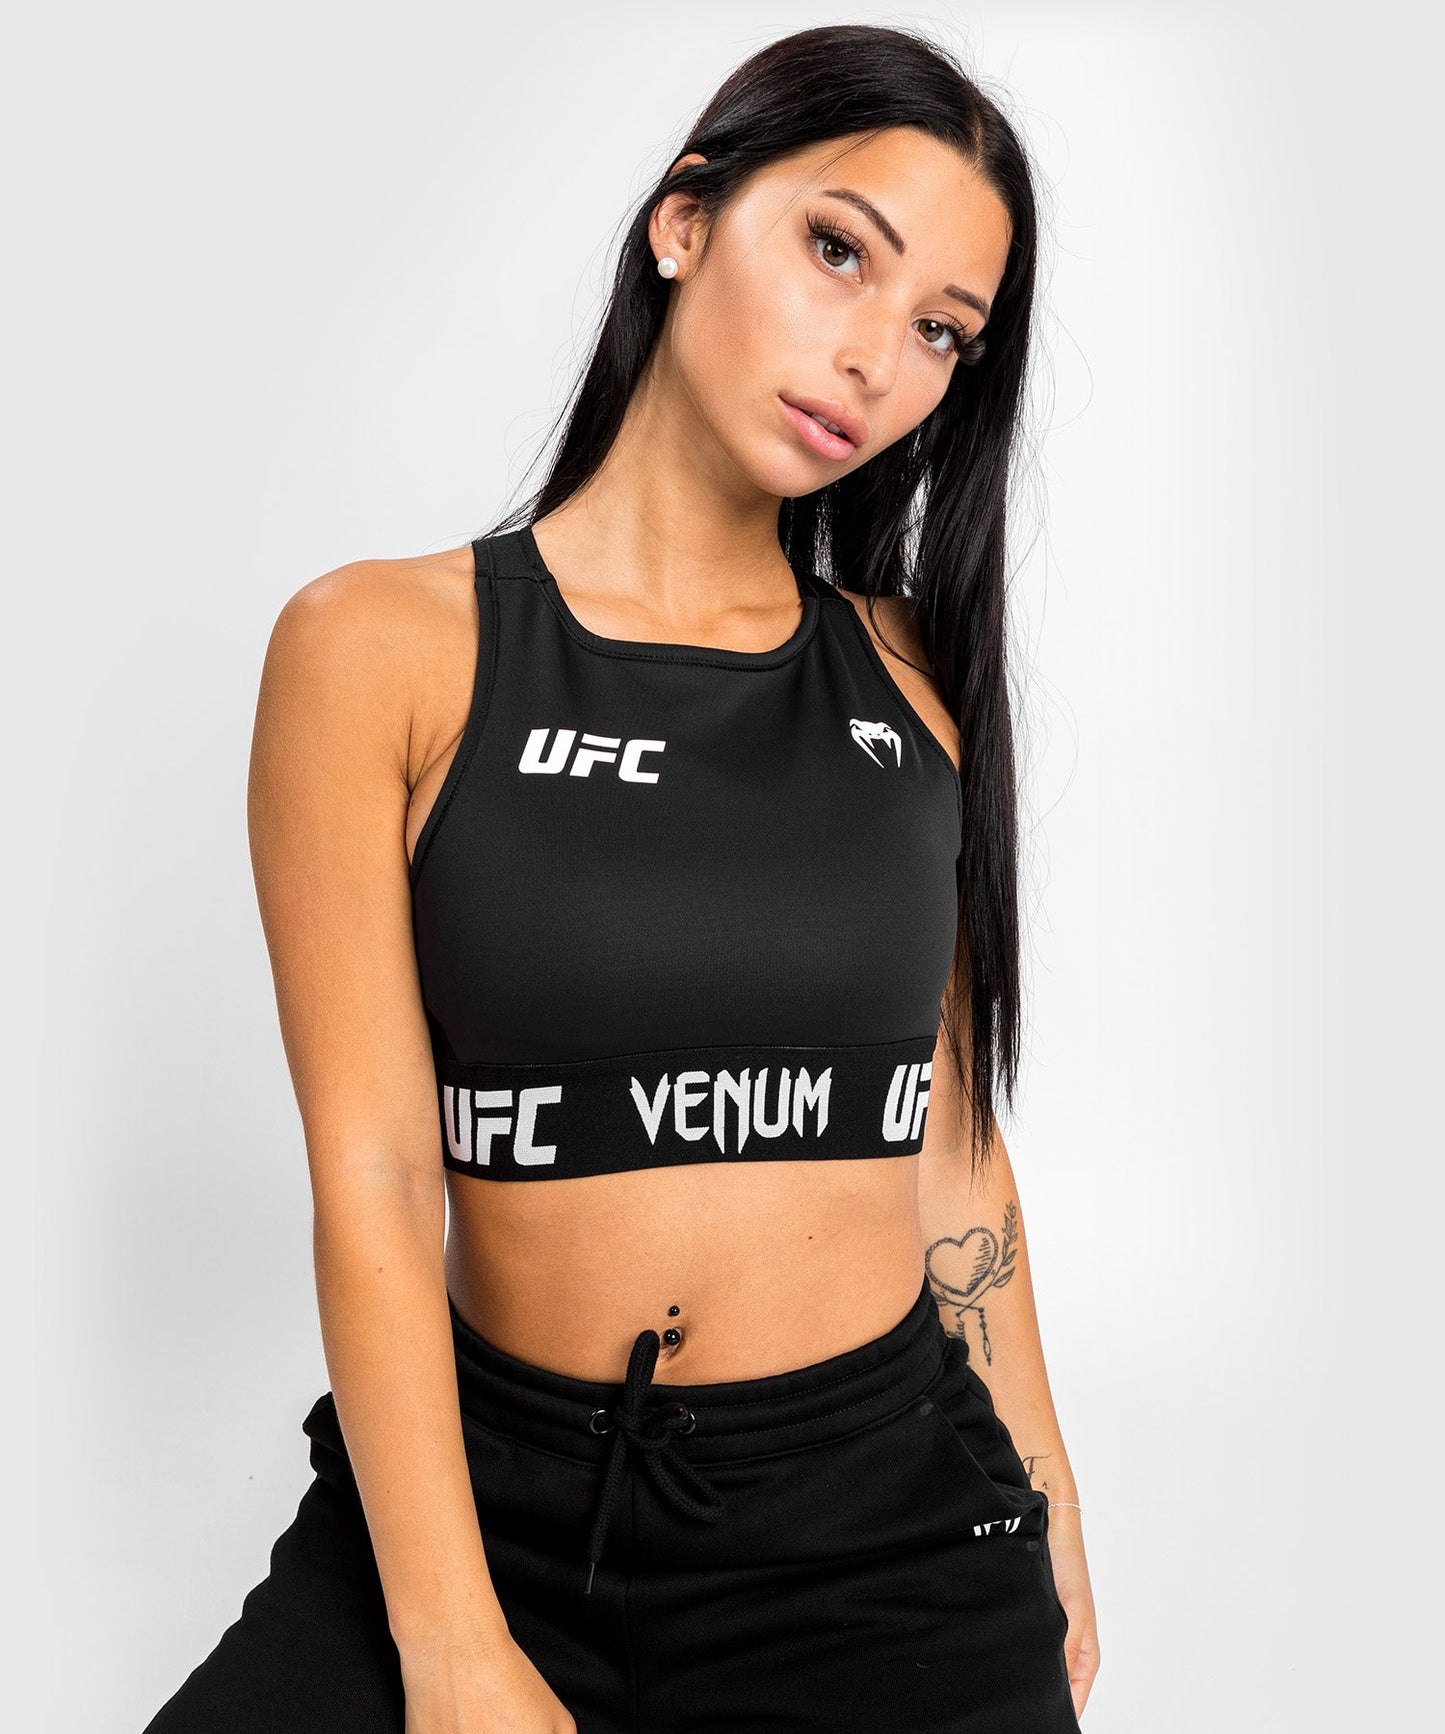 UFC Venum Authentic Fight Week Women's Weigh-in Bra - Black